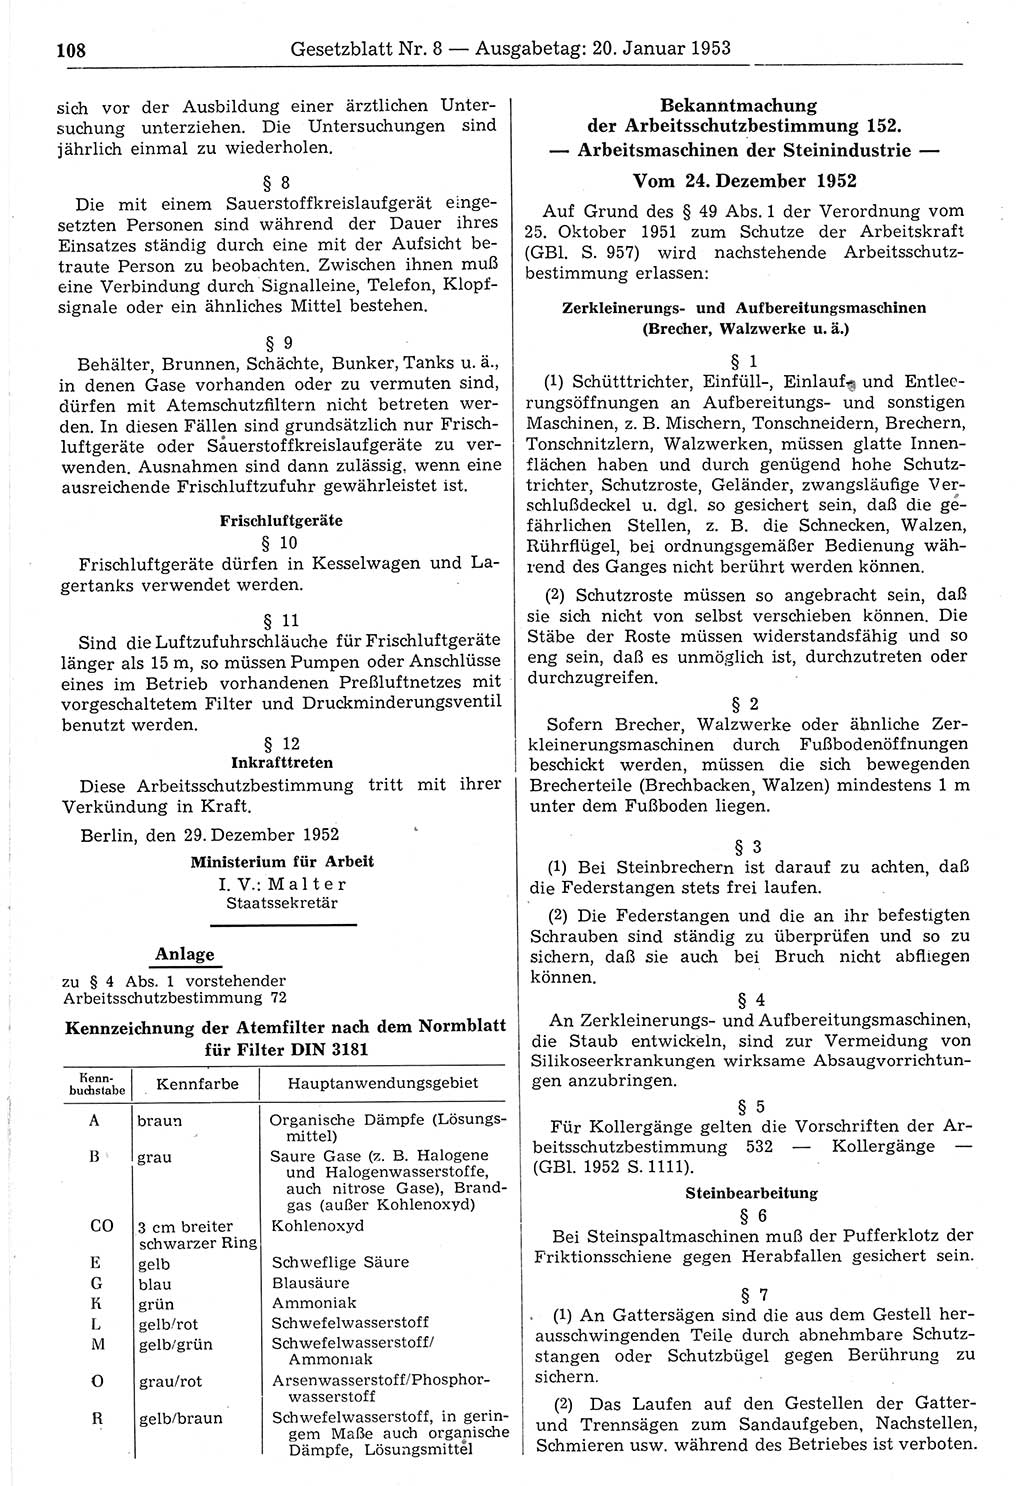 Gesetzblatt (GBl.) der Deutschen Demokratischen Republik (DDR) 1953, Seite 108 (GBl. DDR 1953, S. 108)